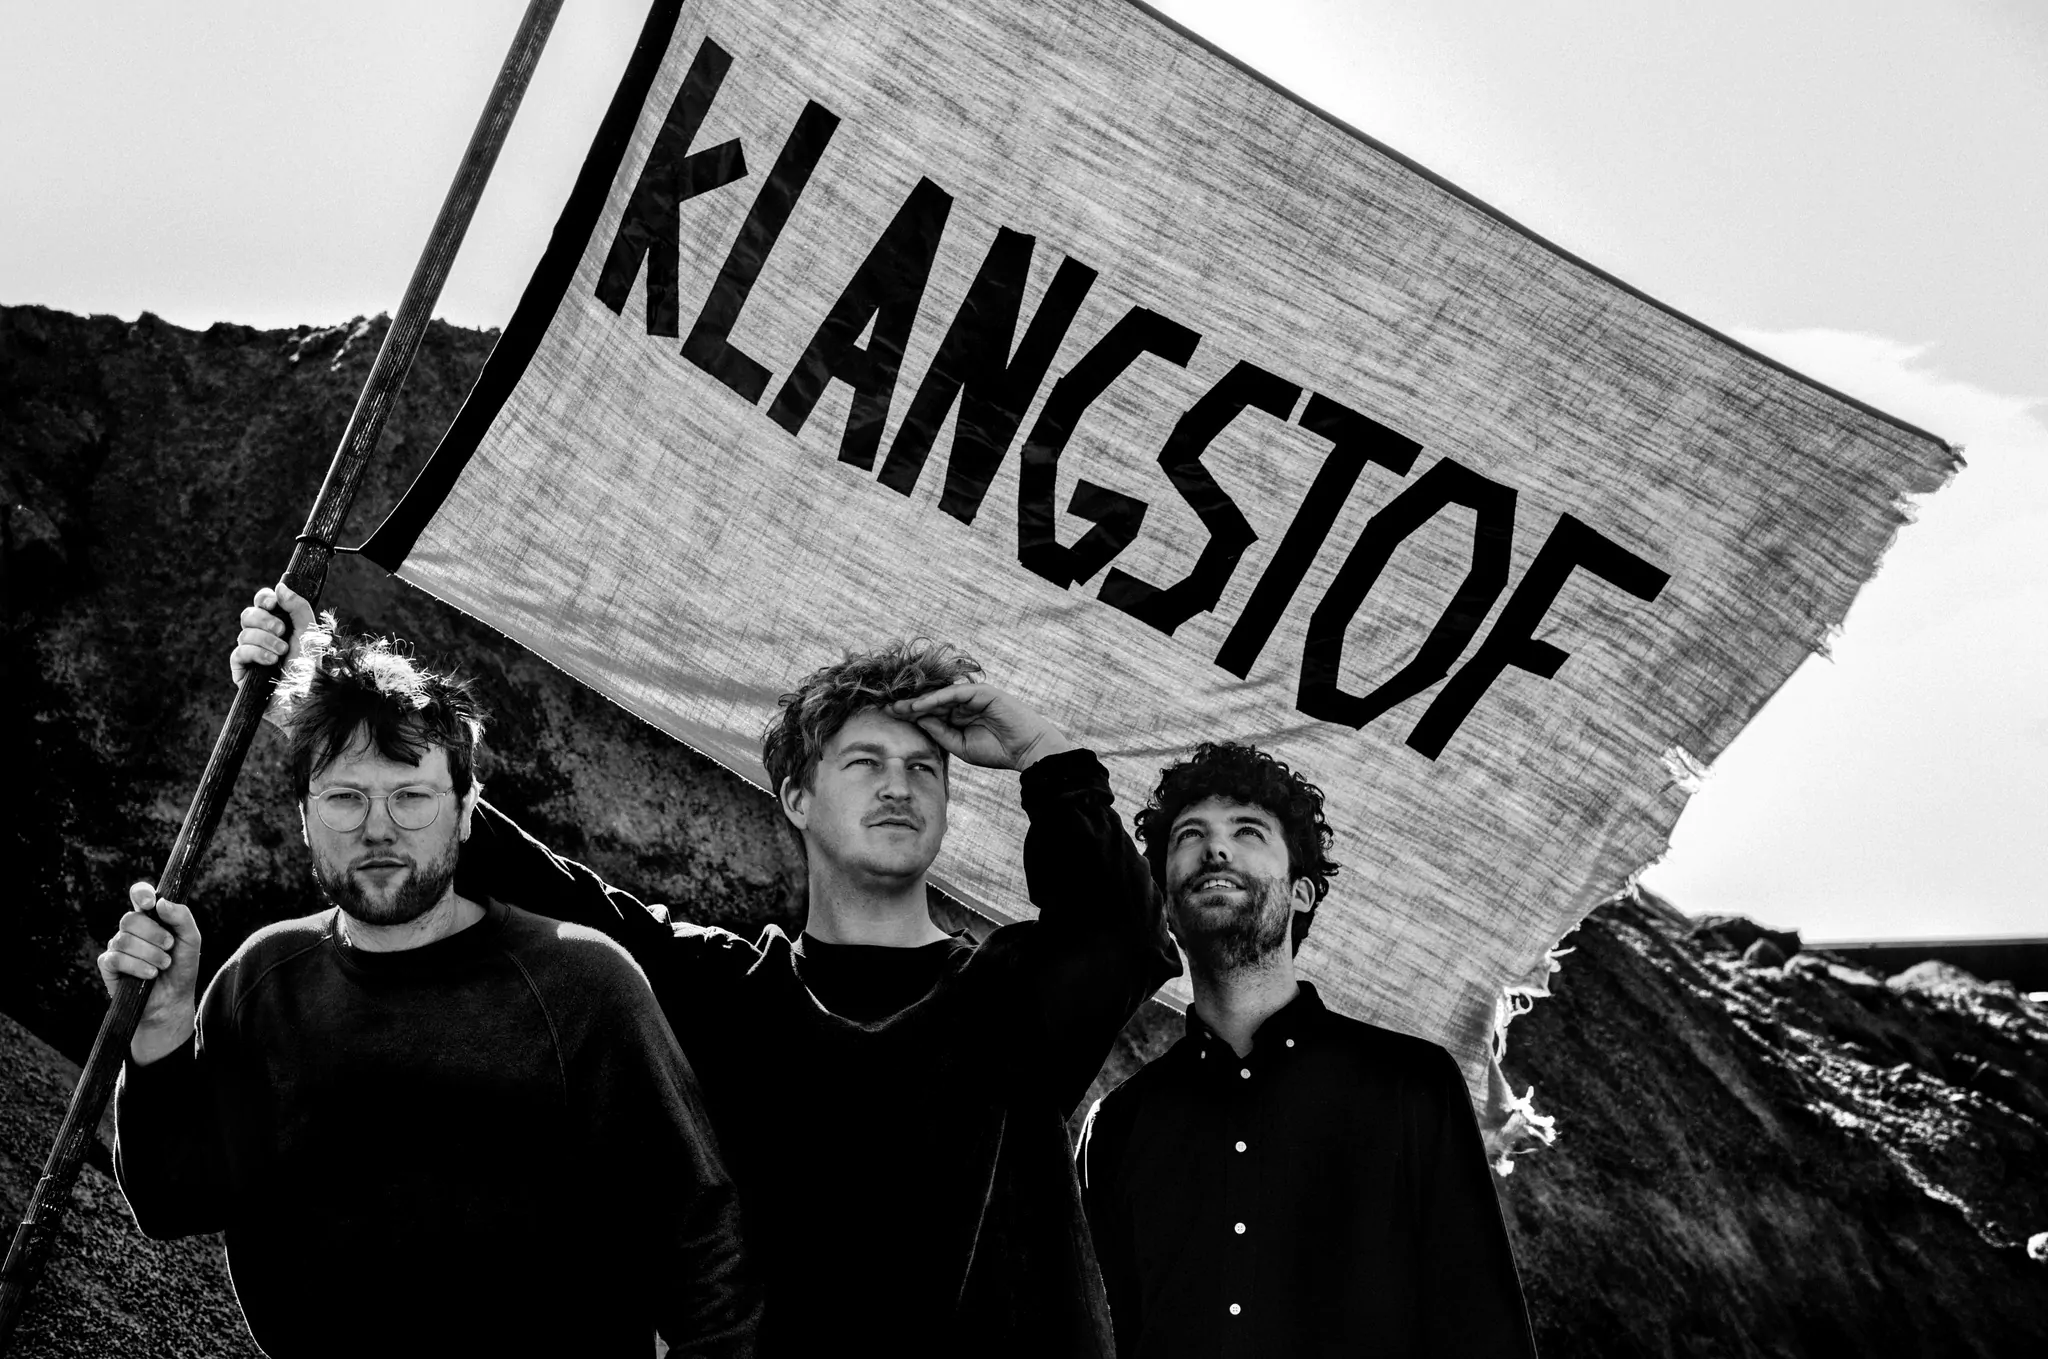 INTERVIEW: Koen van de Wardt from Klangstof on new album – ‘Godspeed To The Freaks’